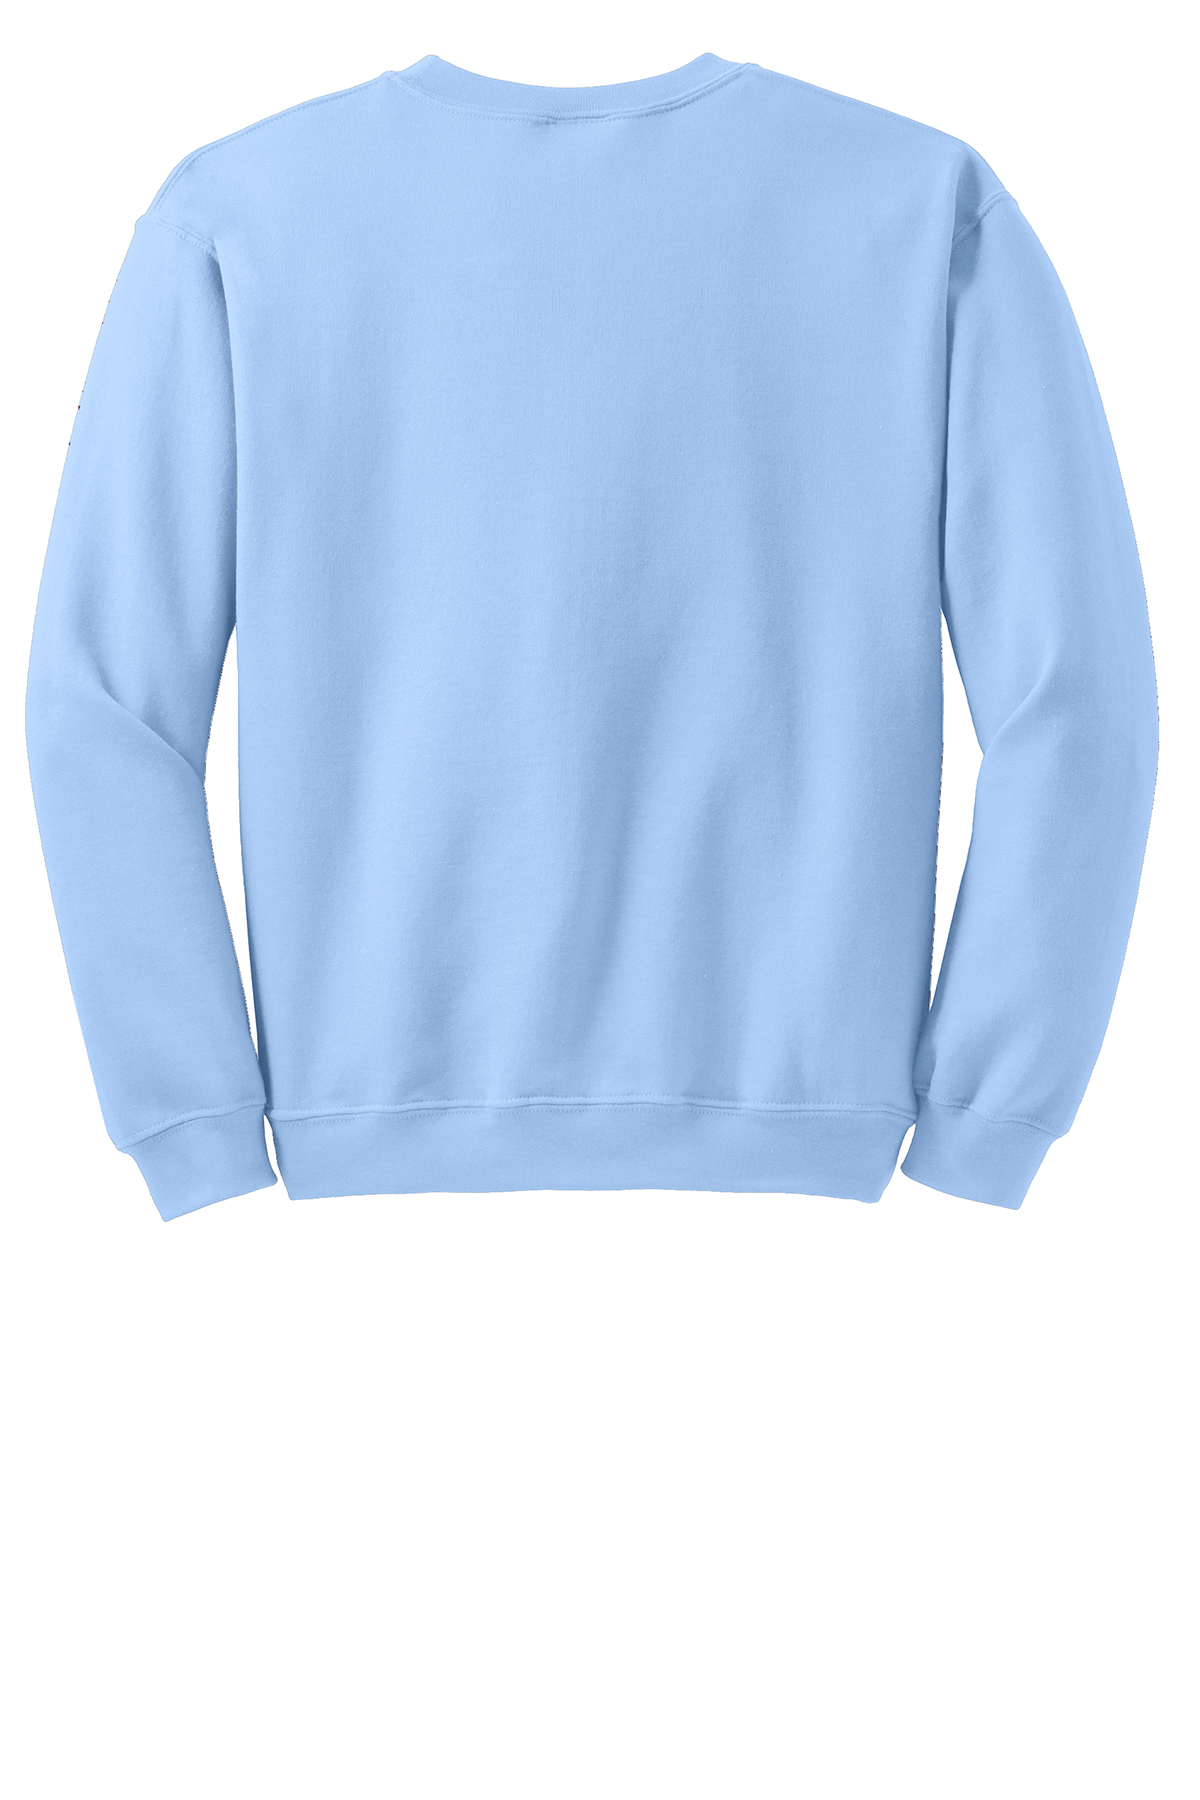 Back of Blue Gildan Sweatshirt — Light Blue Gildan 18000 Sweatshirt Mockup — Light Blue Unisex Crew Neck Sweatshirt Model Mock in Blue